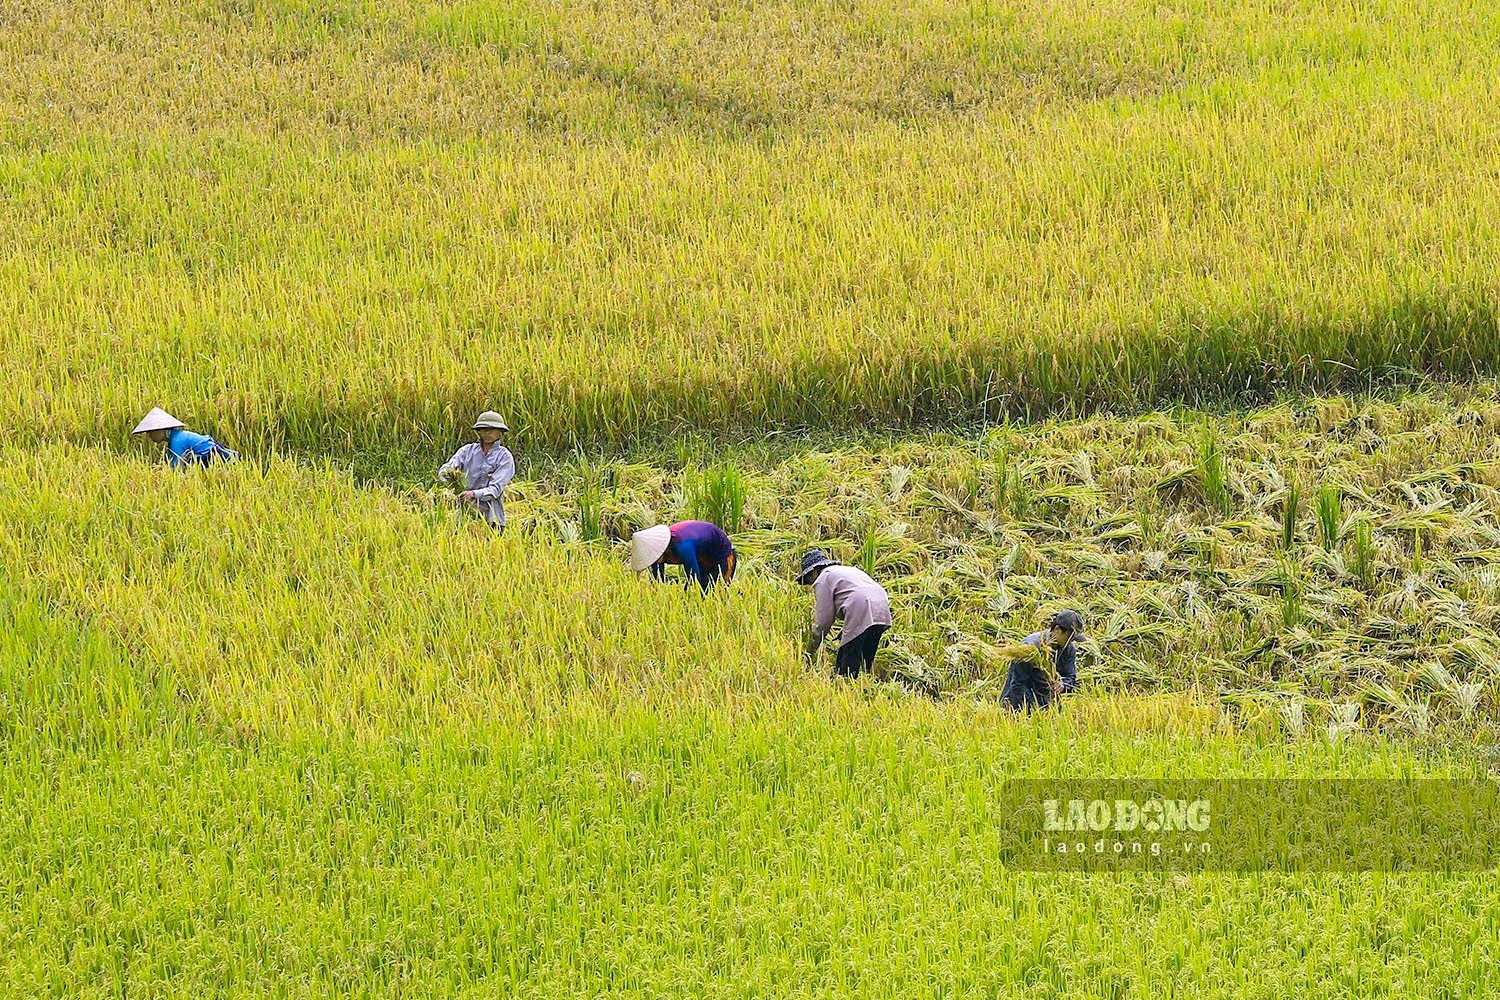 Một số thửa ruộng đã đến độ thu hoạch, người dân háo hức cùng nhau gặt lúa về.